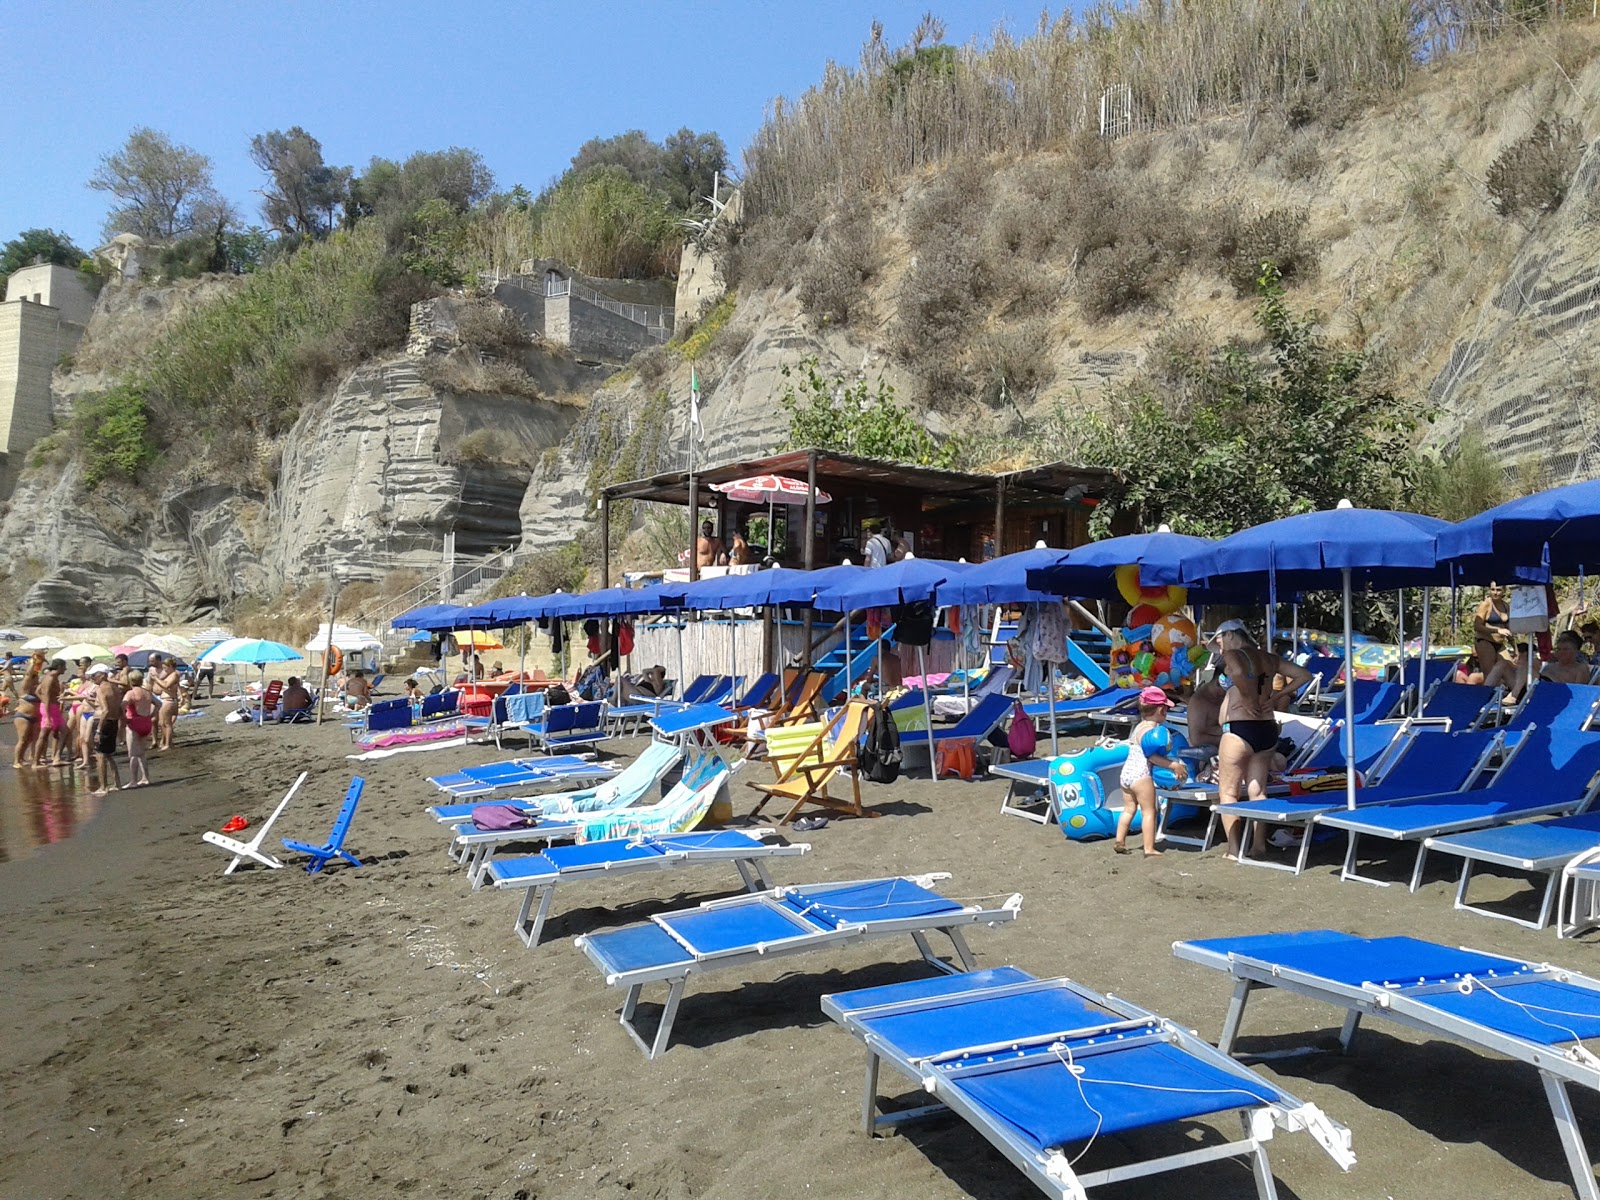 Spiaggia Chiaia'in fotoğrafı çok temiz temizlik seviyesi ile